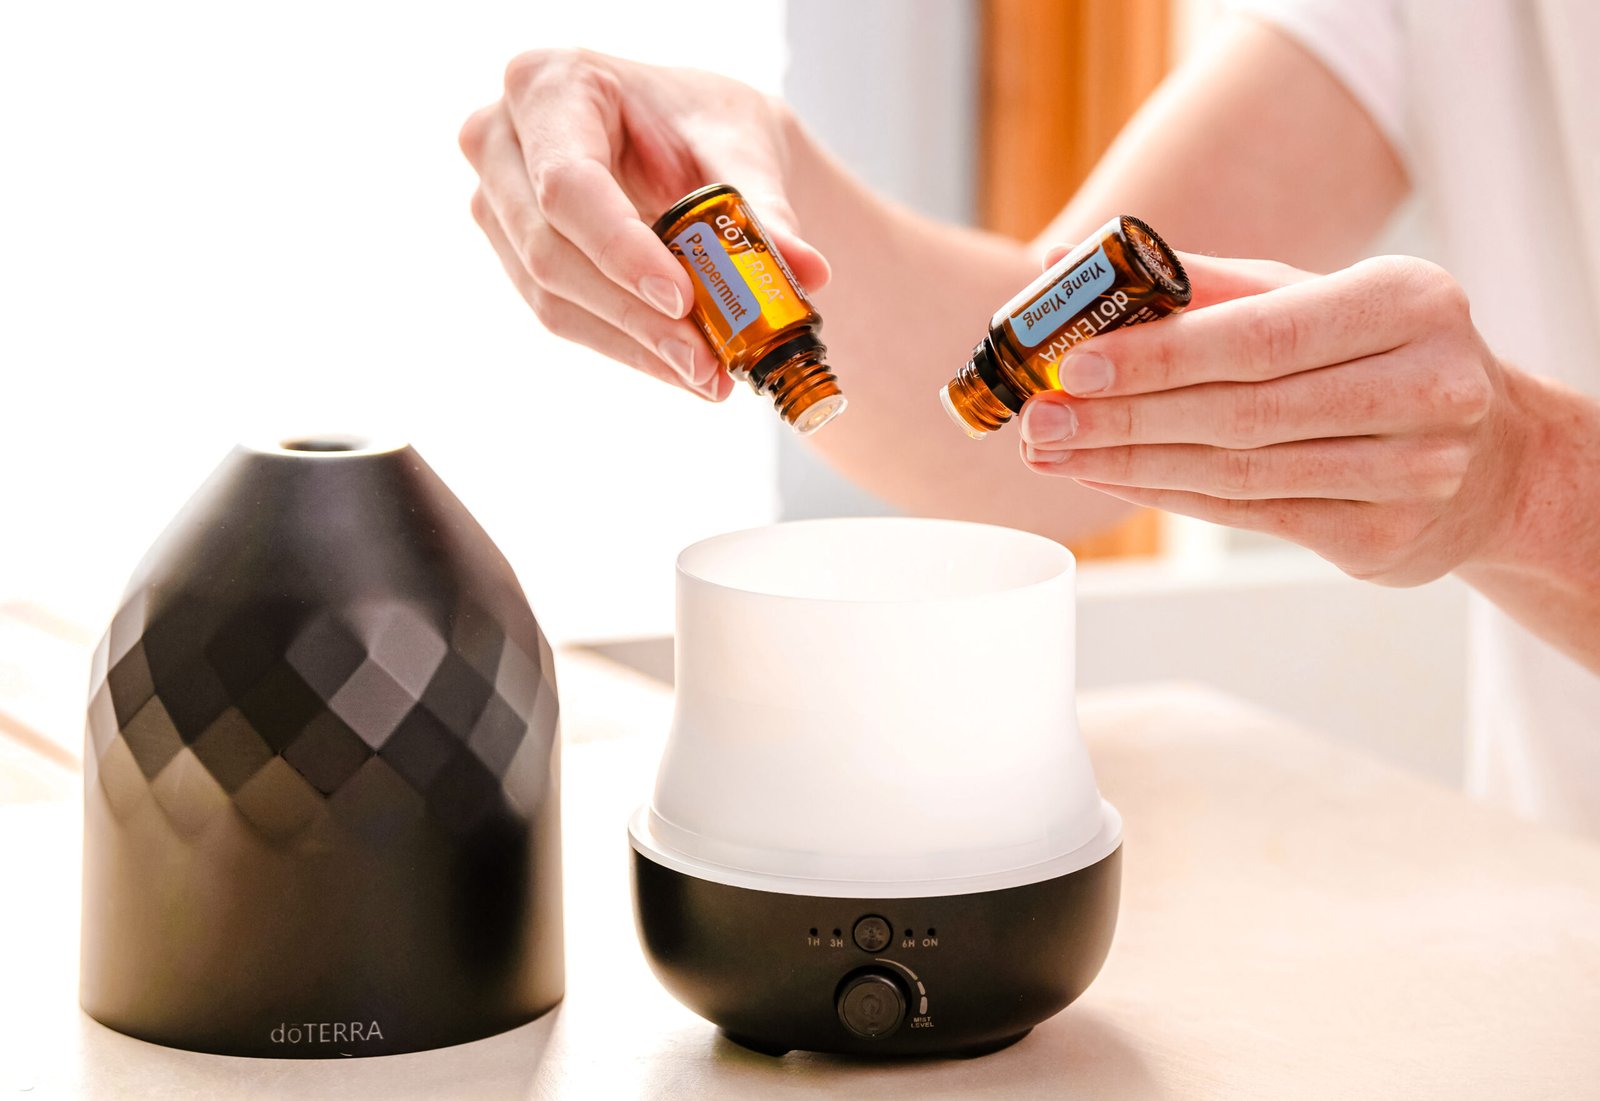 Desbloqueie o Poder da Aromaterapia: Como Funciona e os Benefícios para adotar Hábitos Saudáveis.